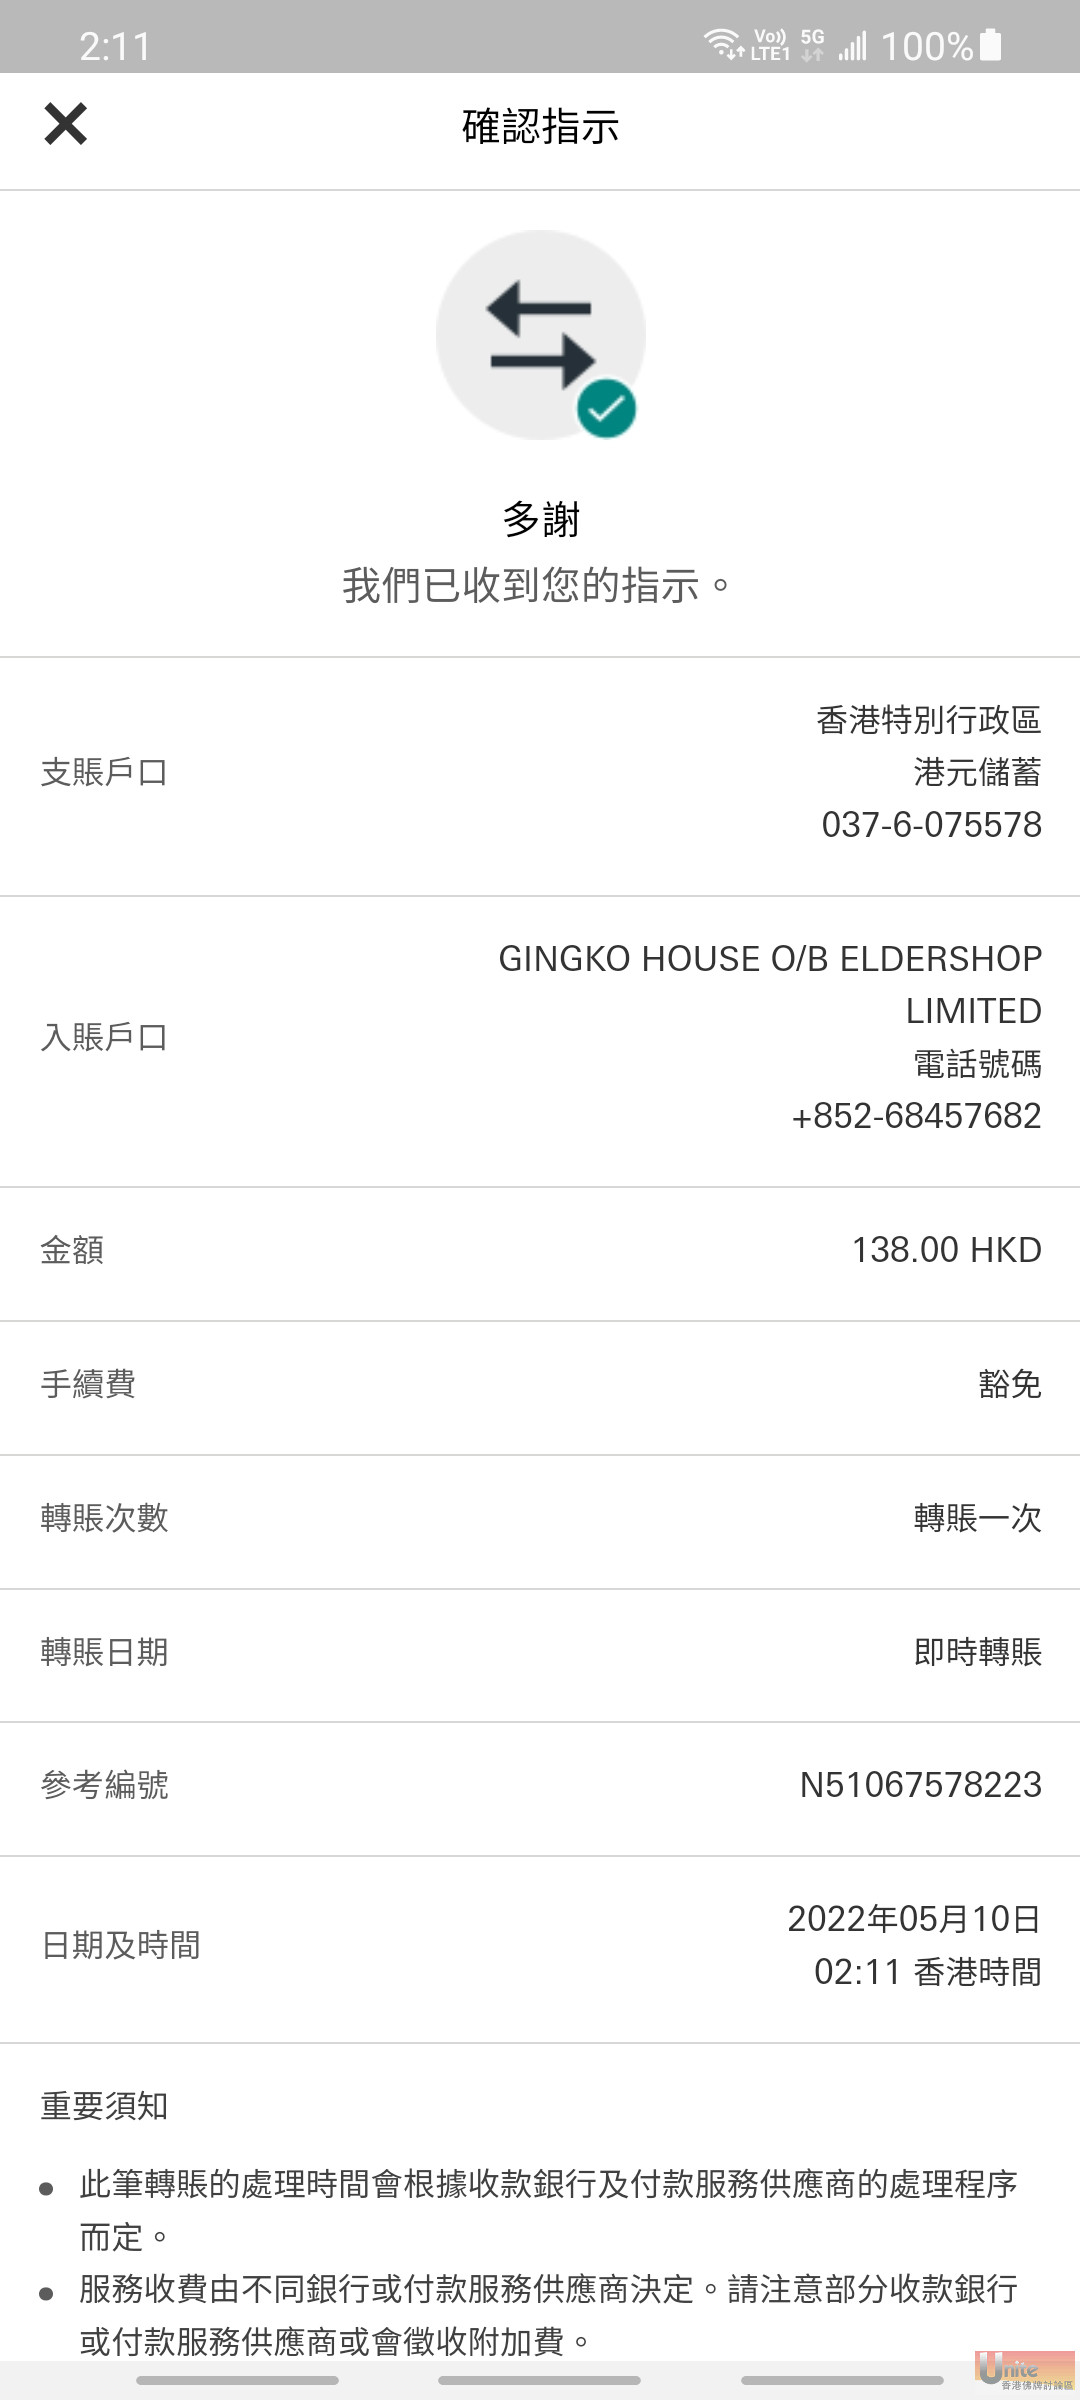 Screenshot_20220510-021144_HSBC HK.jpg